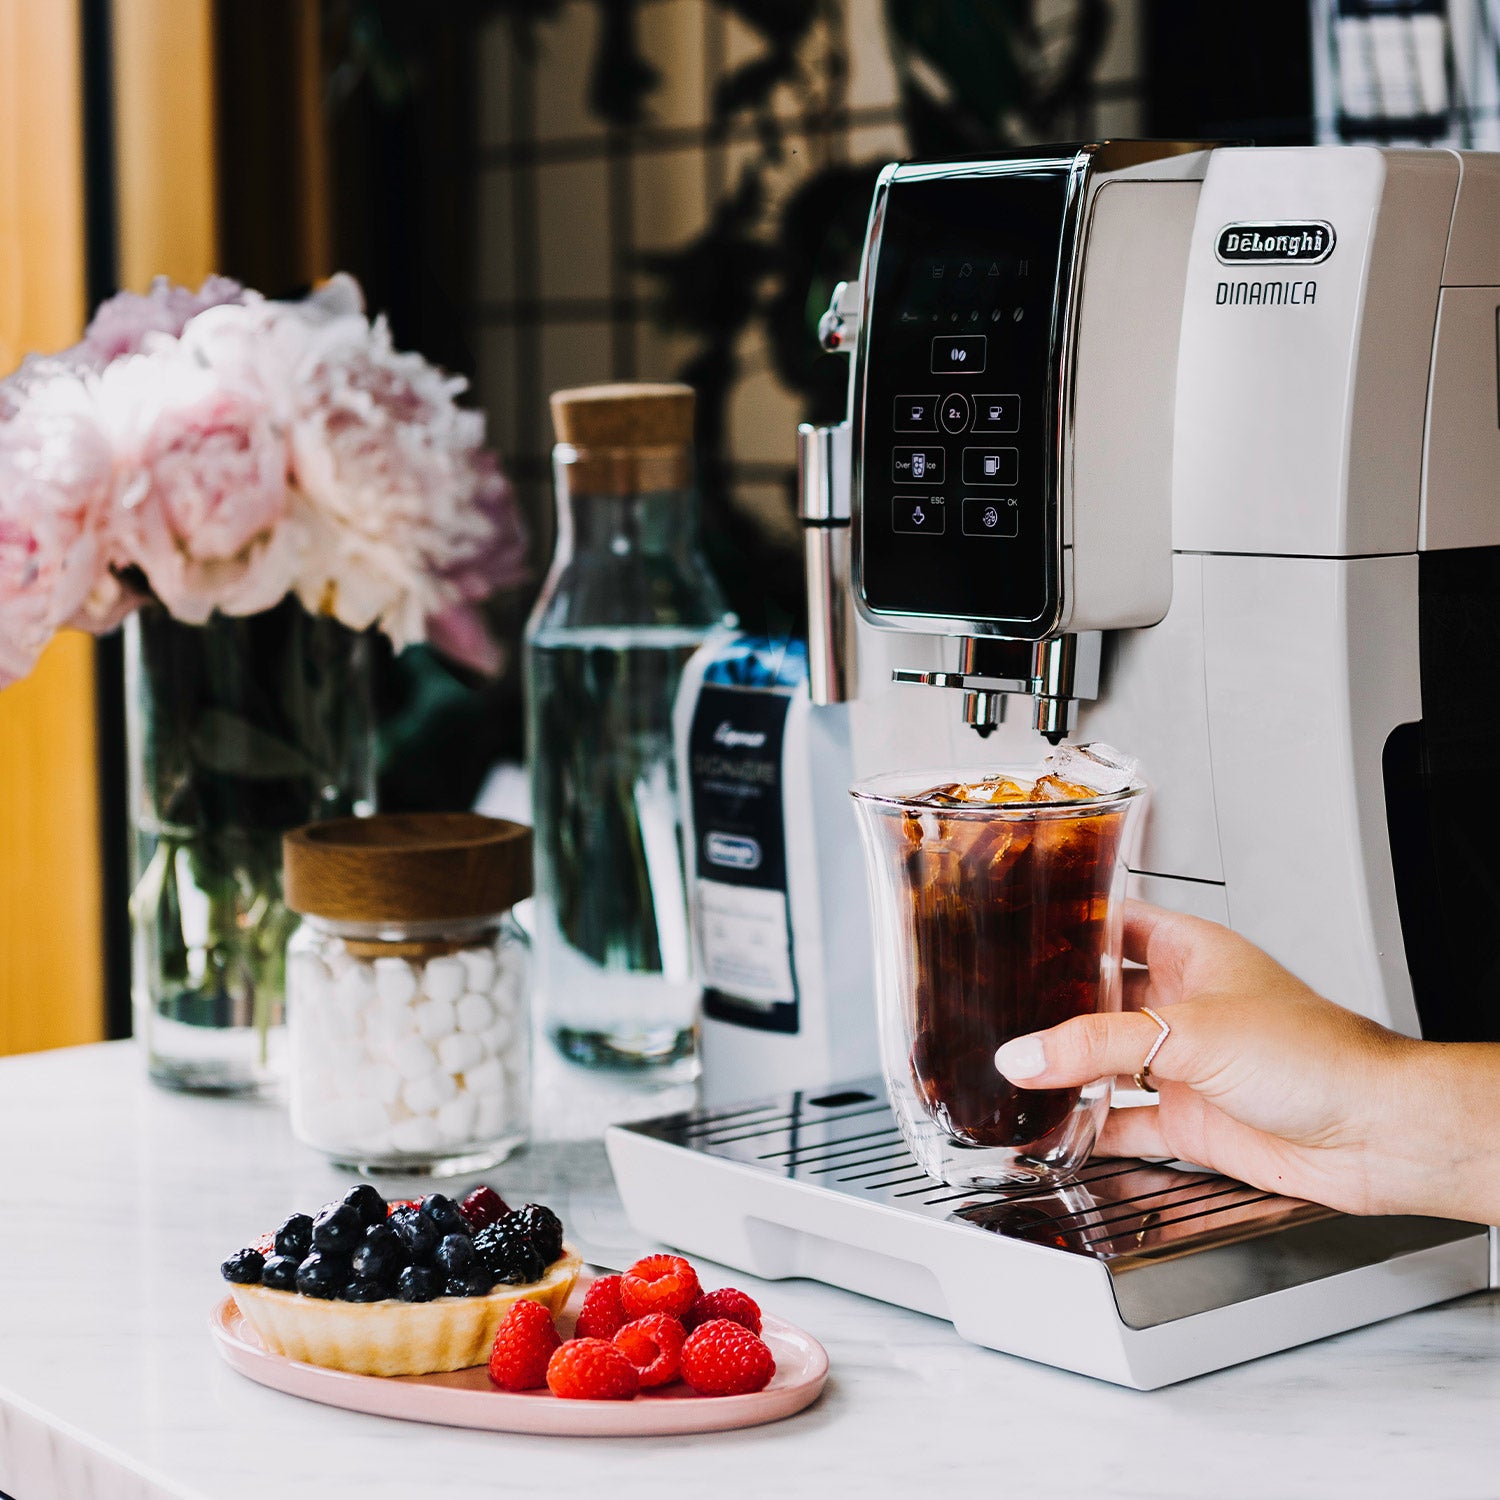 DeLonghi Dinamica Automatic Iced Coffee & Espresso Machine, White